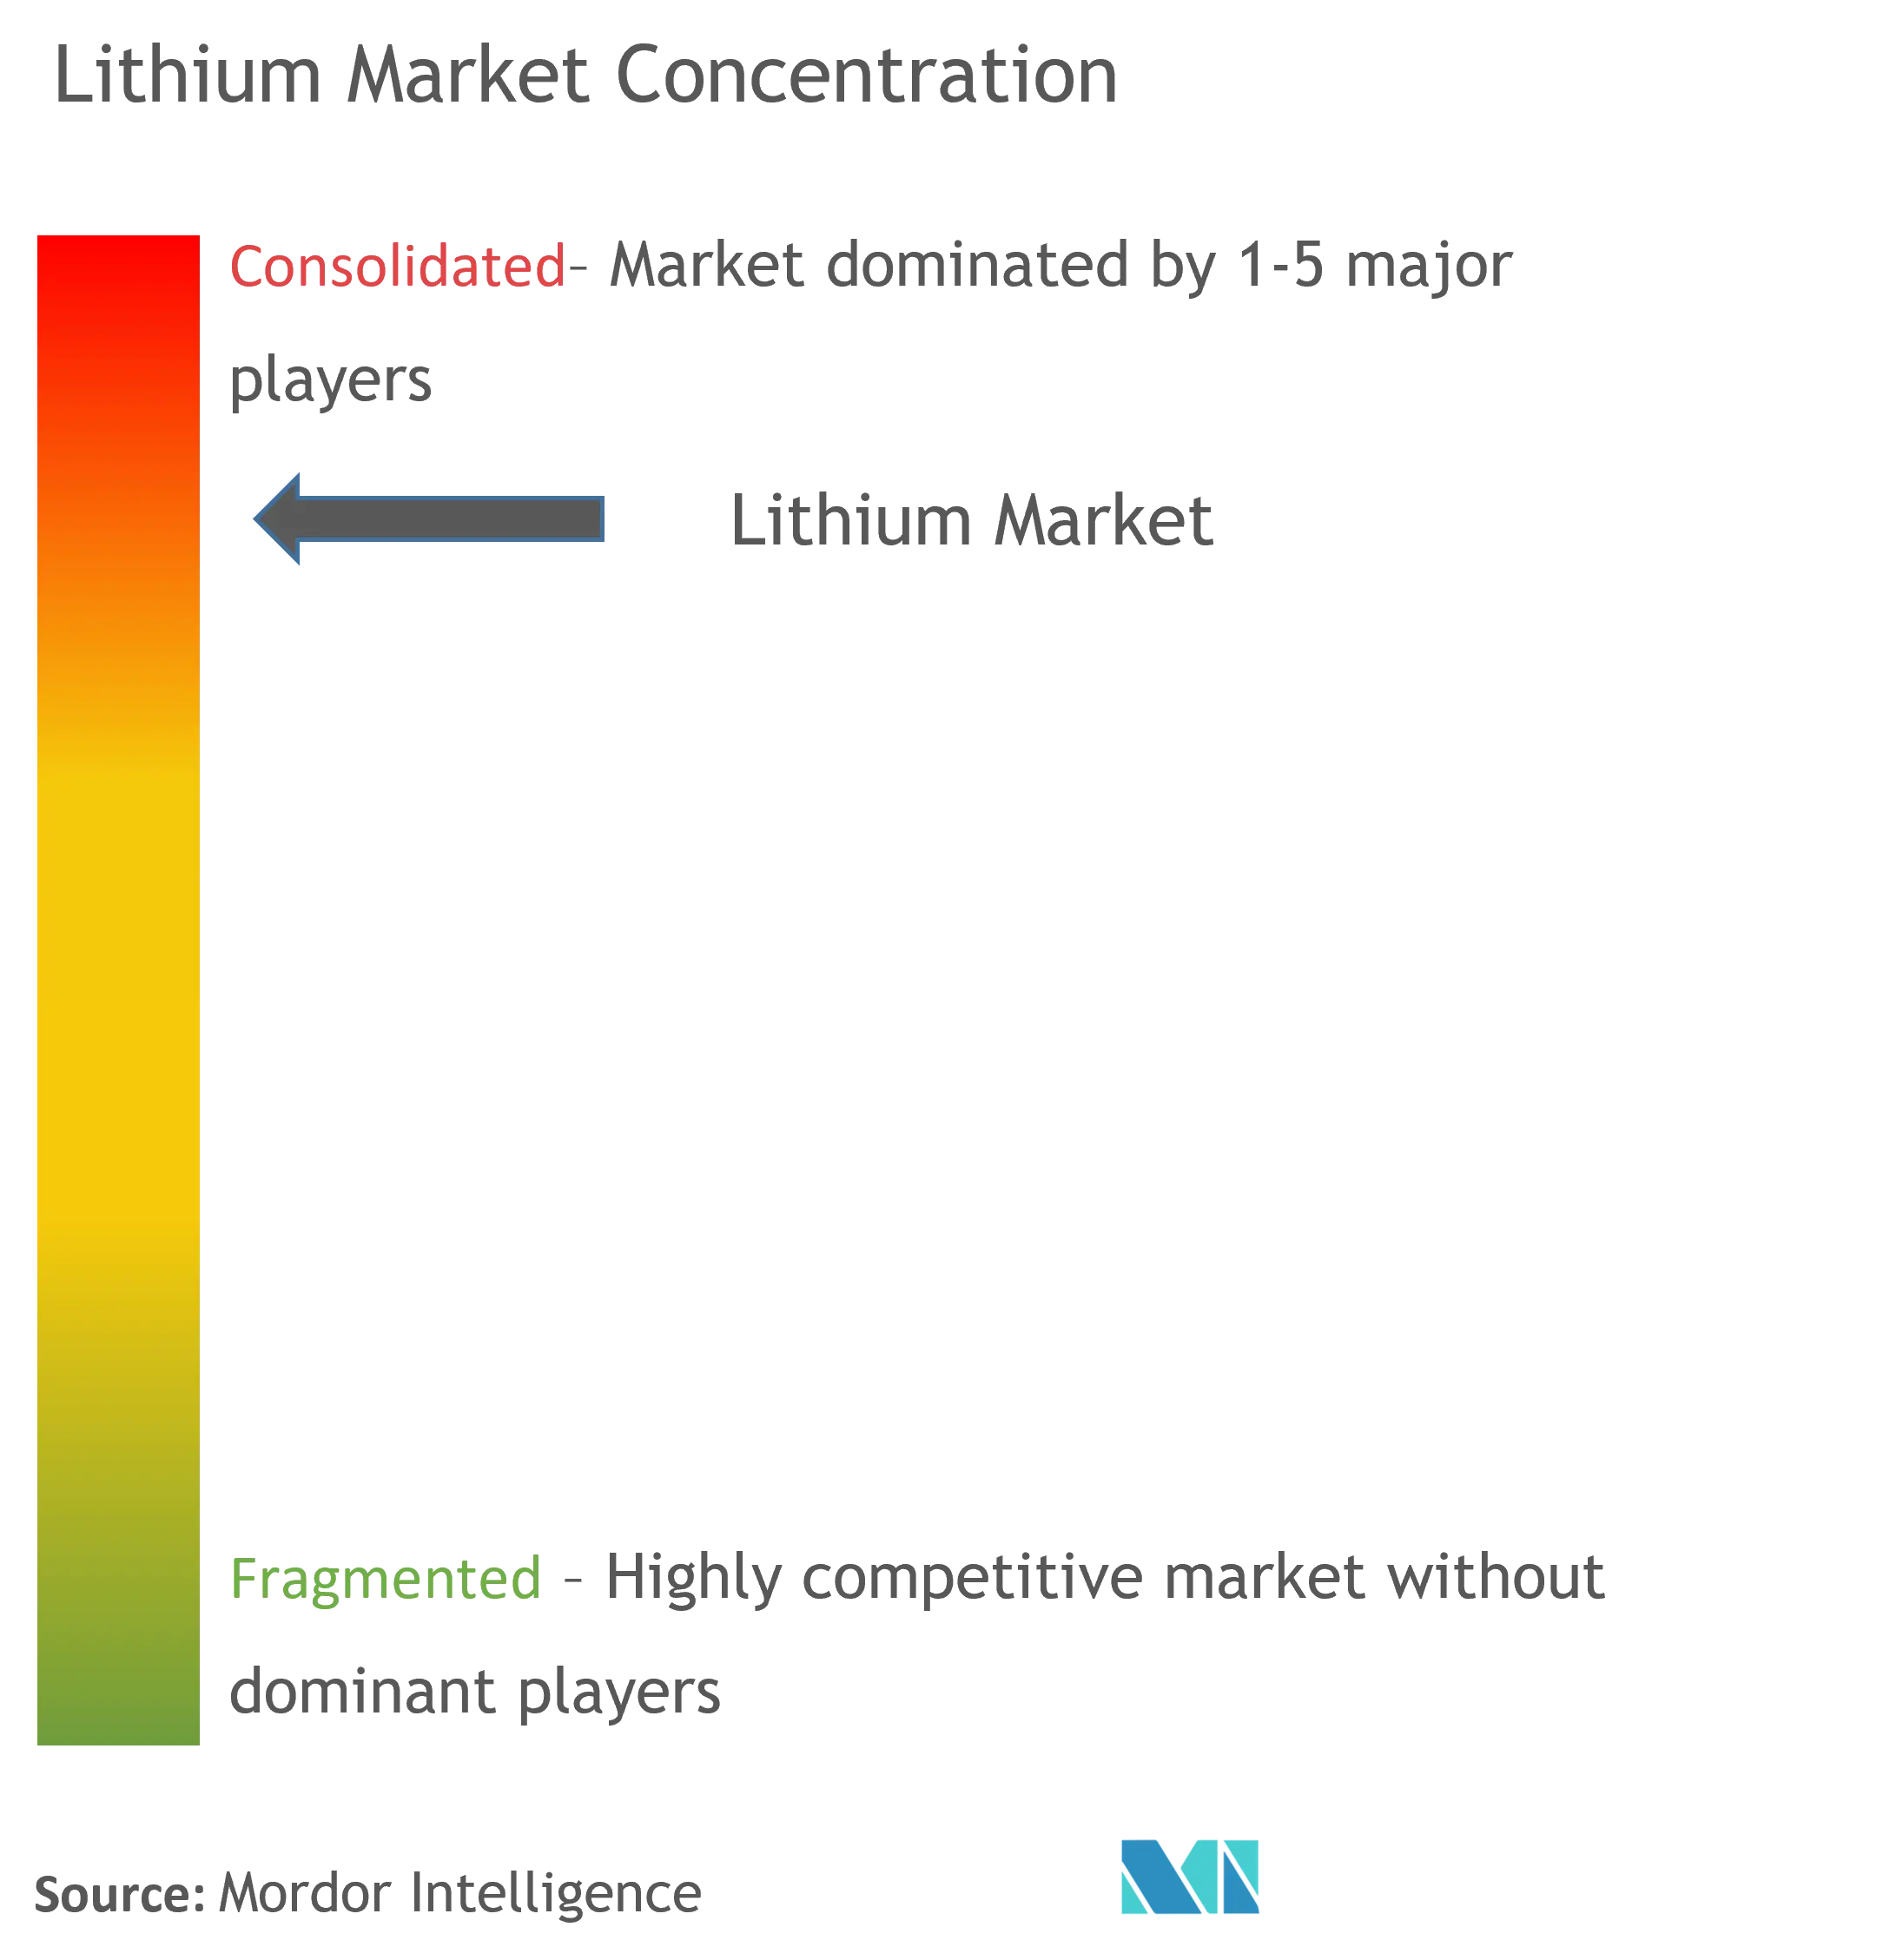 Tập trung thị trường Lithium